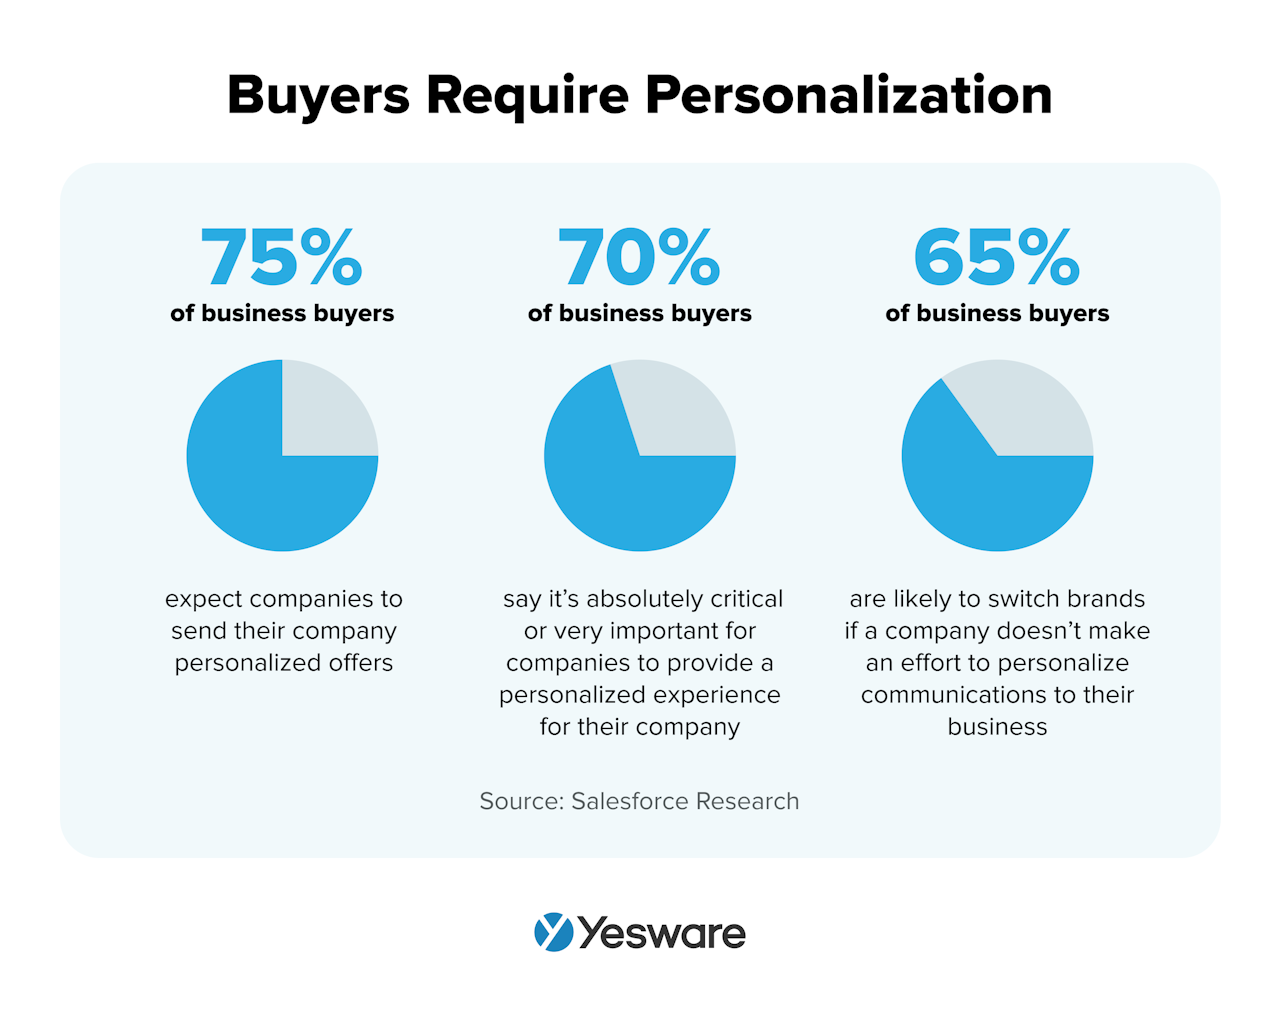 b2b sales tools: personalization